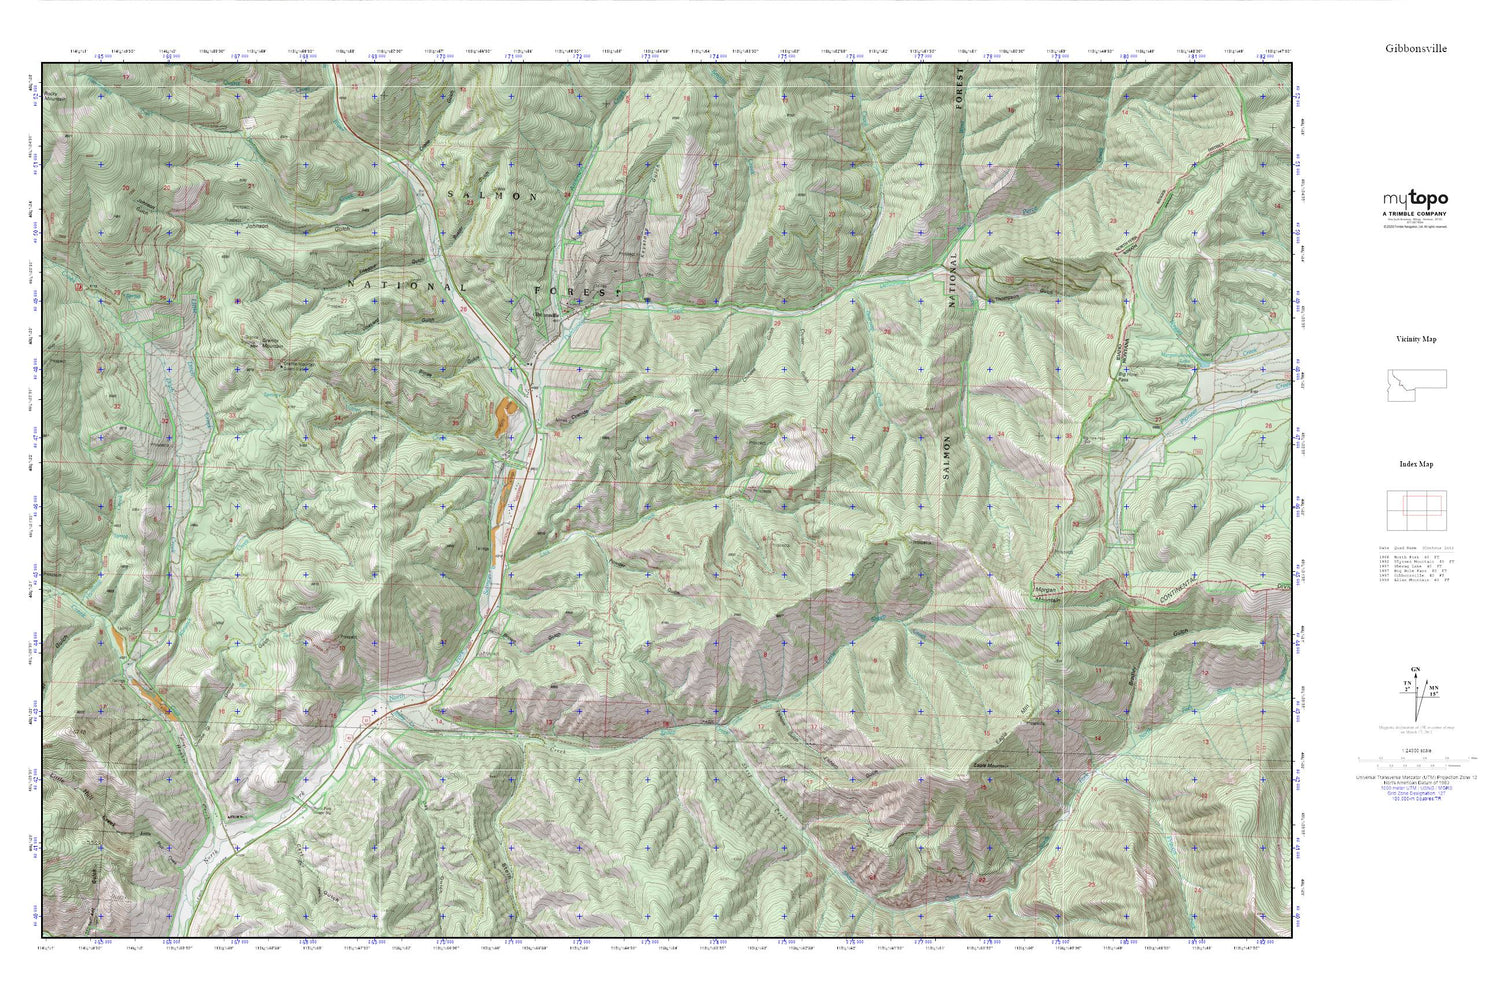 Gibbonsville MyTopo Explorer Series Map Image